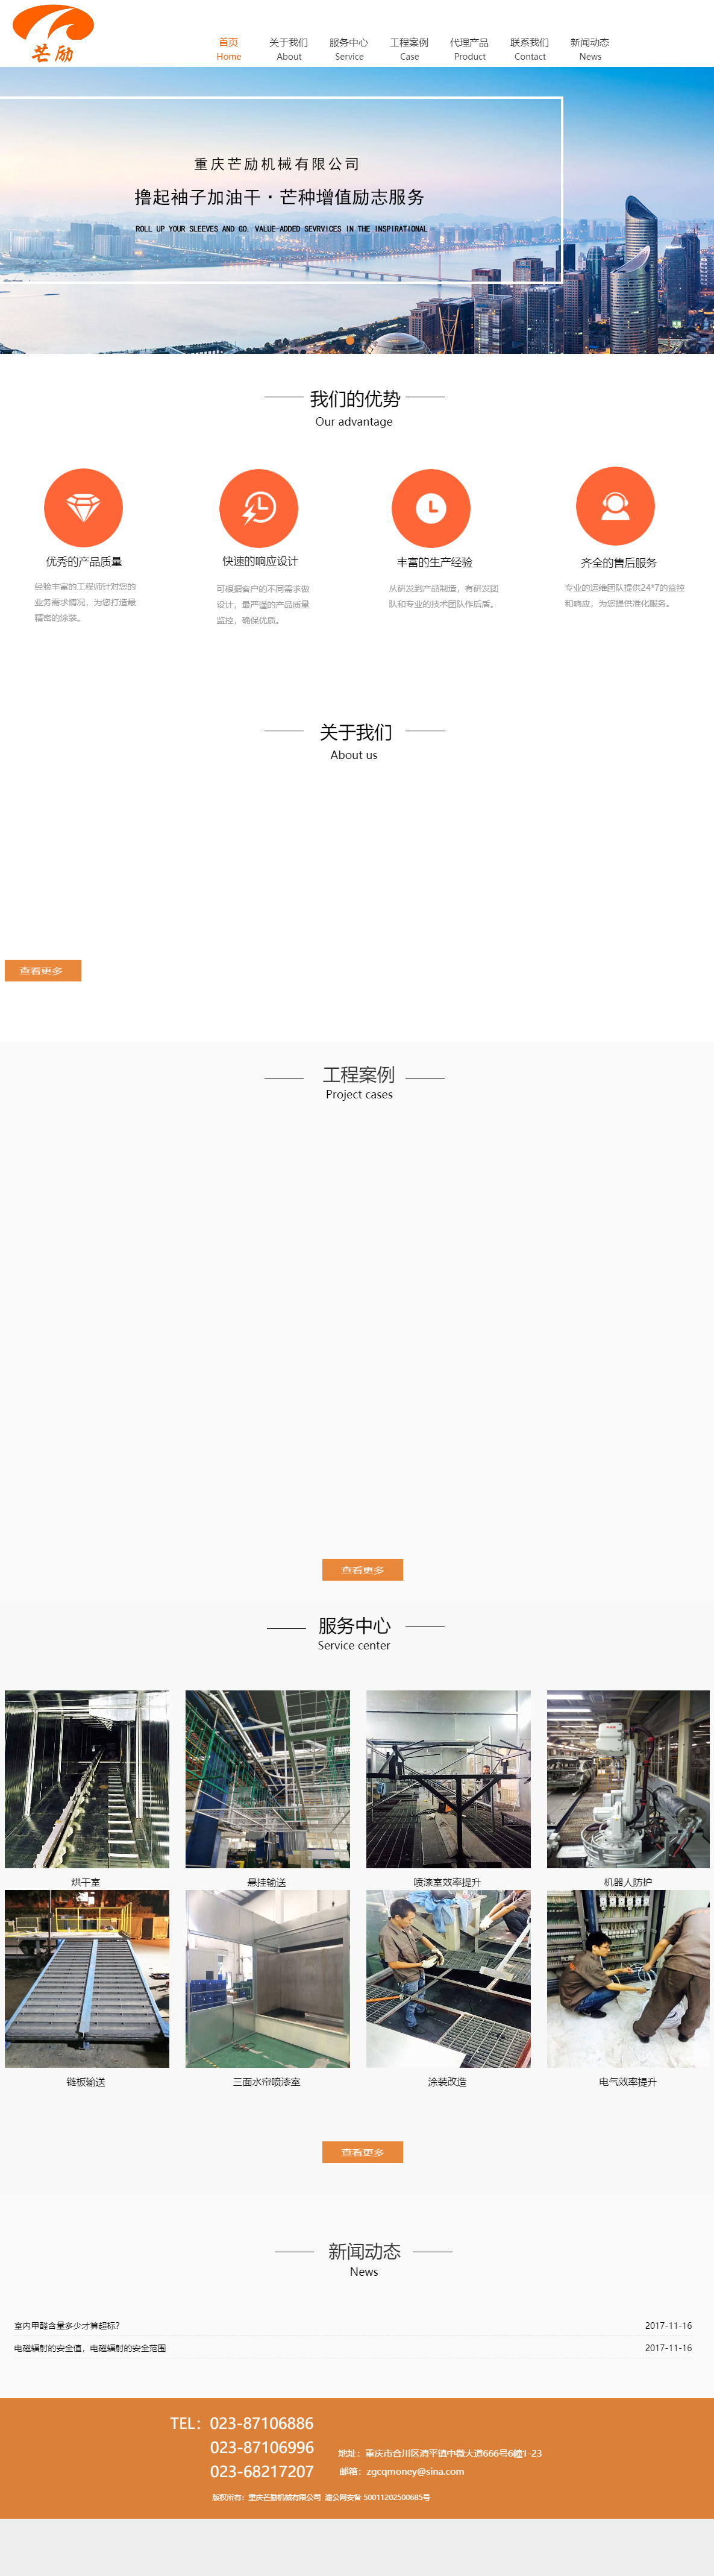 重庆芒励机械有限公司网站案例